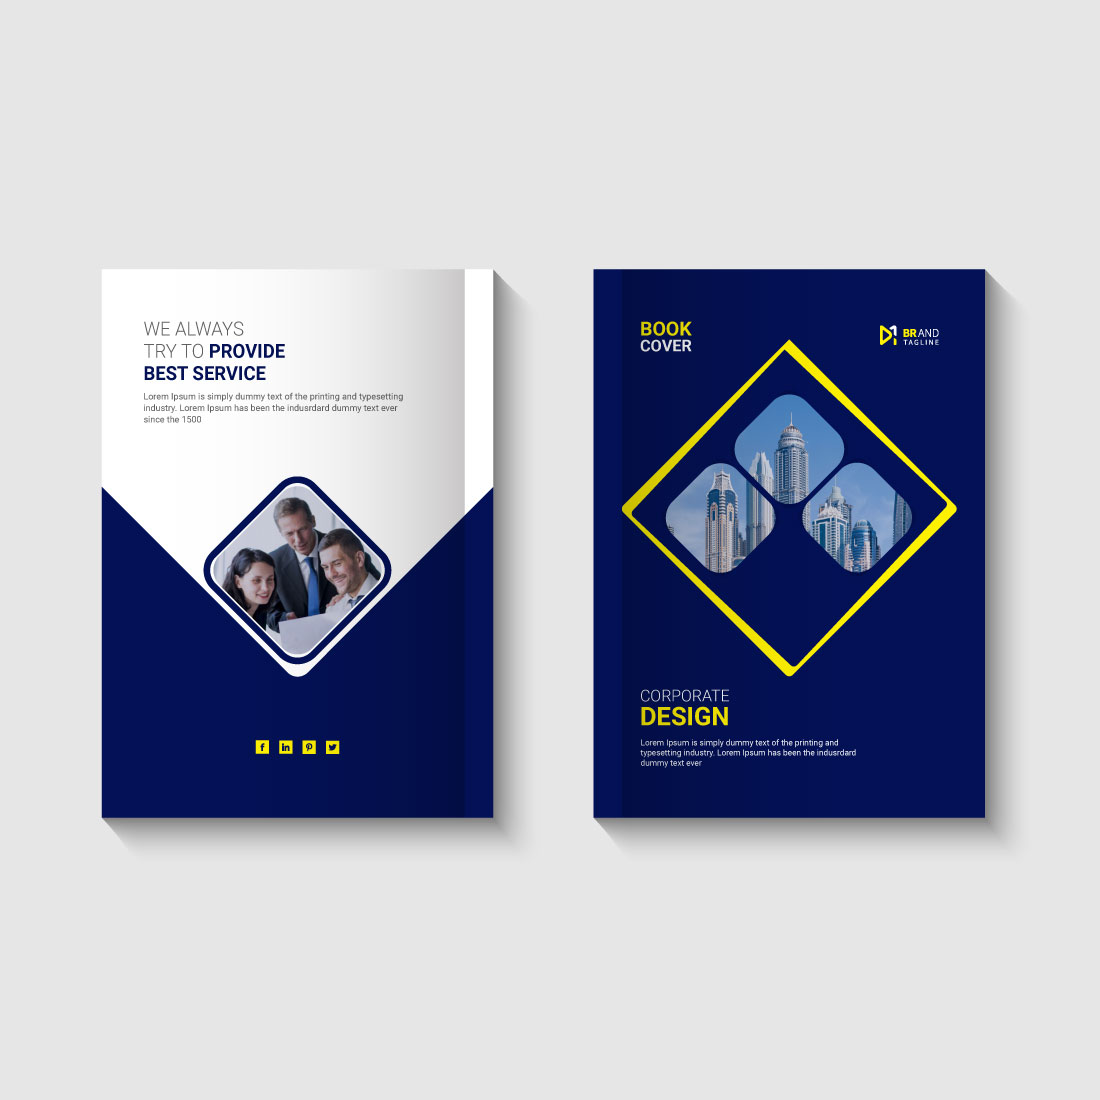 Book Cover Design - Professional Cover Design Service